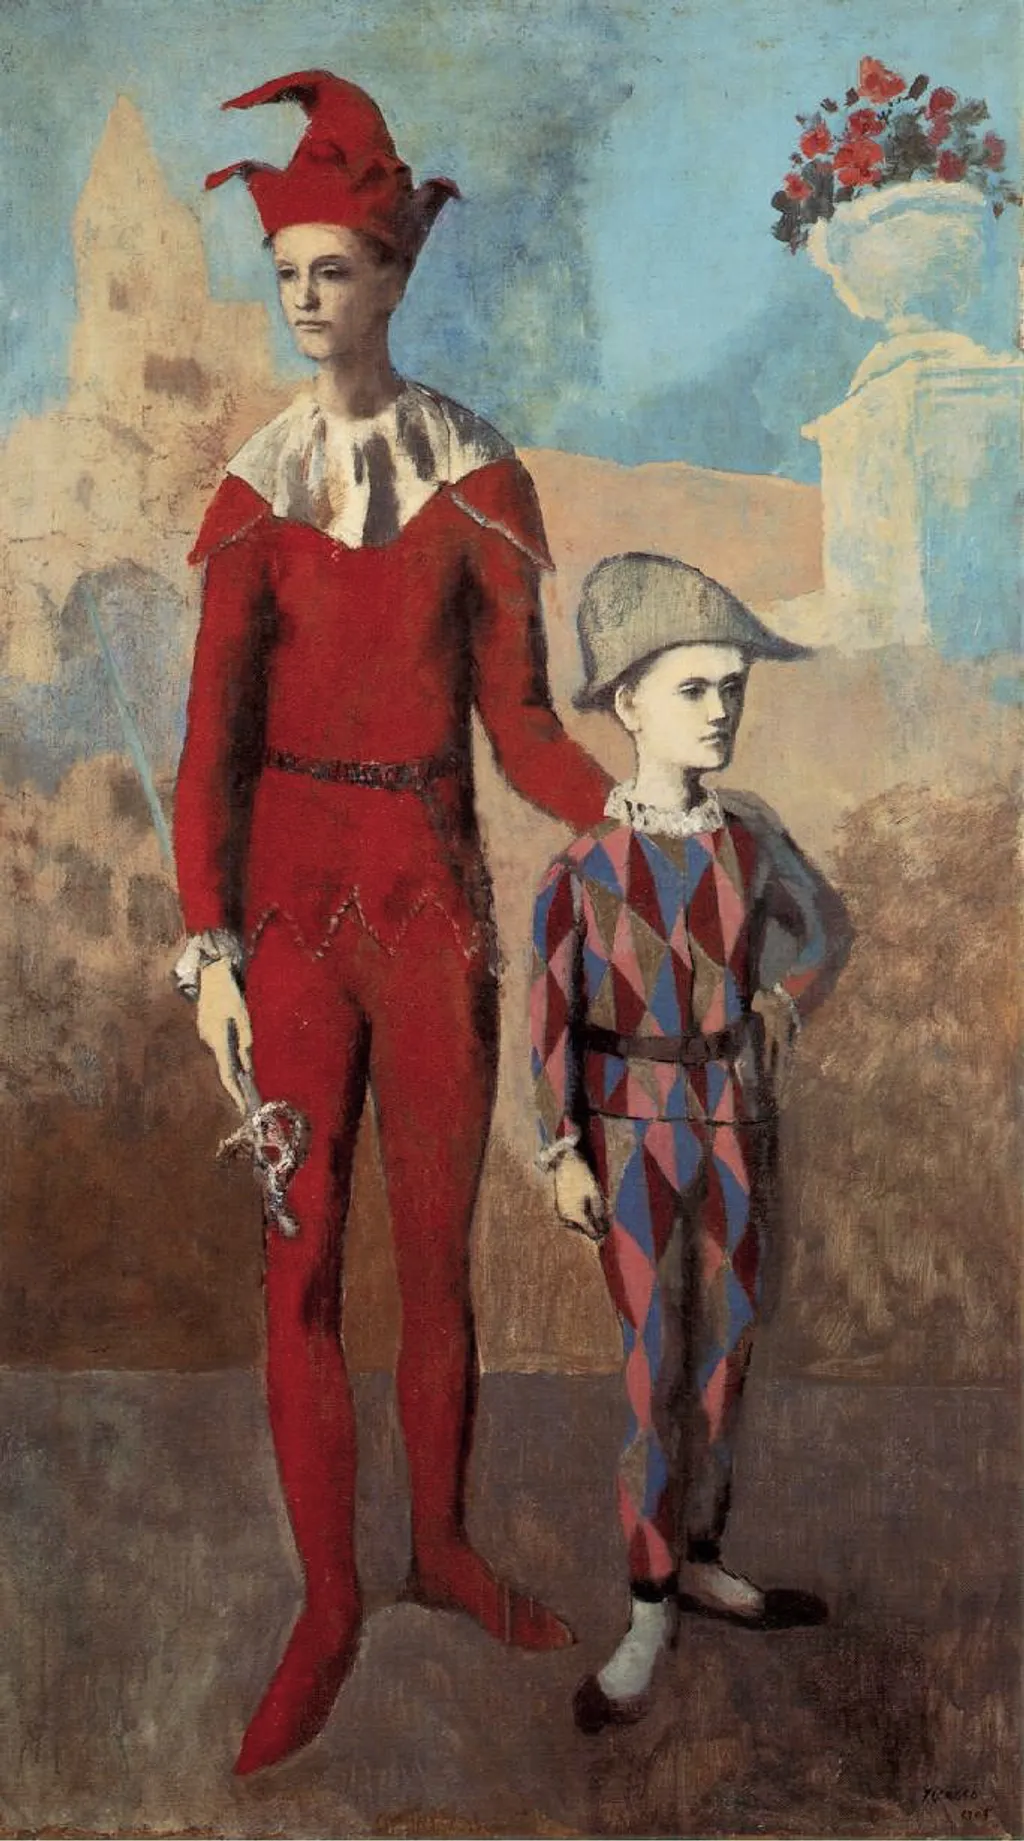 Pablo Picasso
náci galéria 